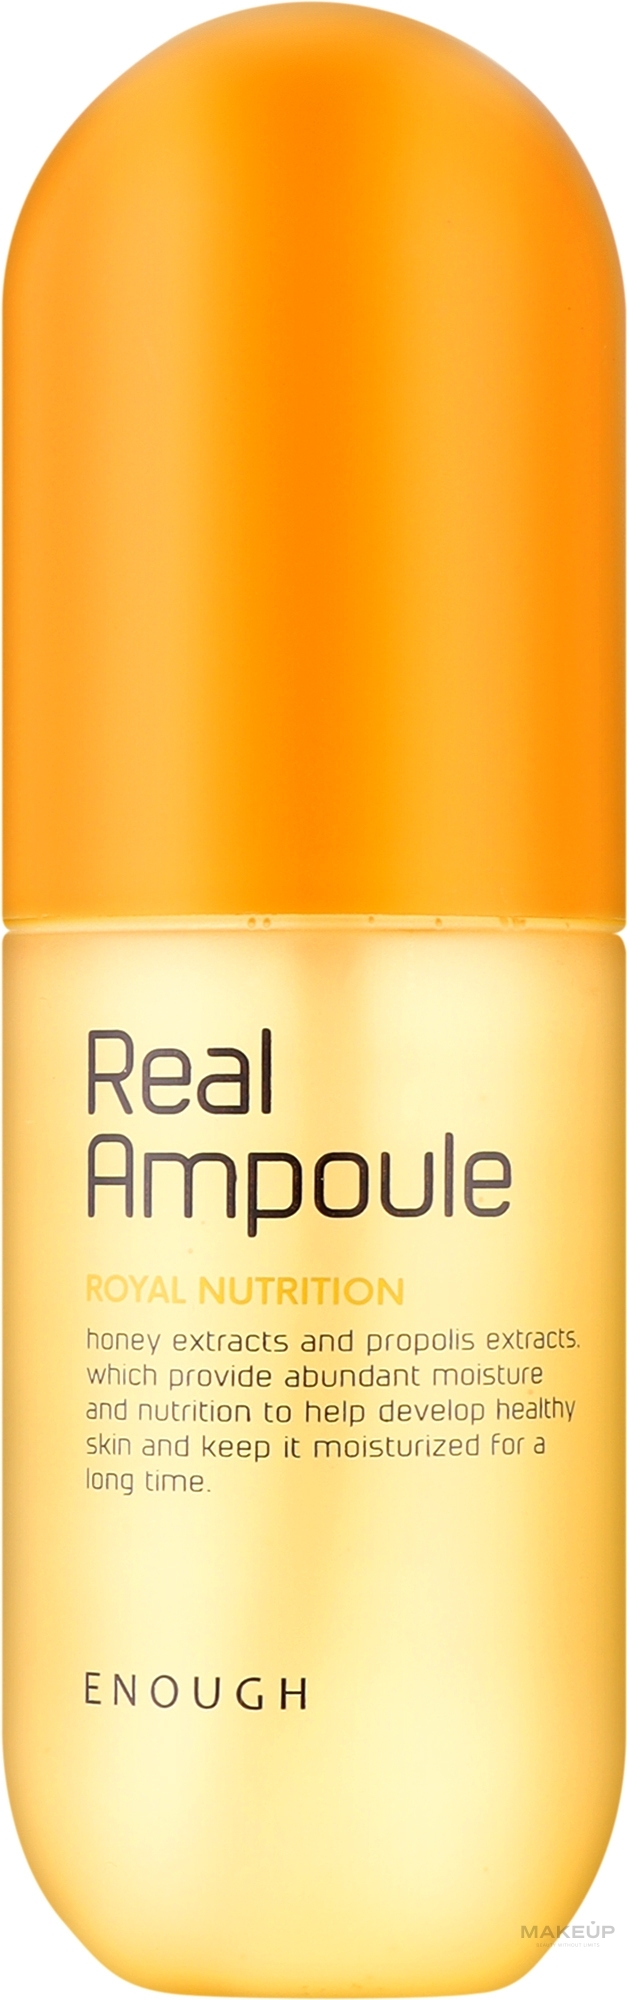 Сыворотка-спрей для лица - Enough Real Ampoule Royal Nutrition — фото 200ml